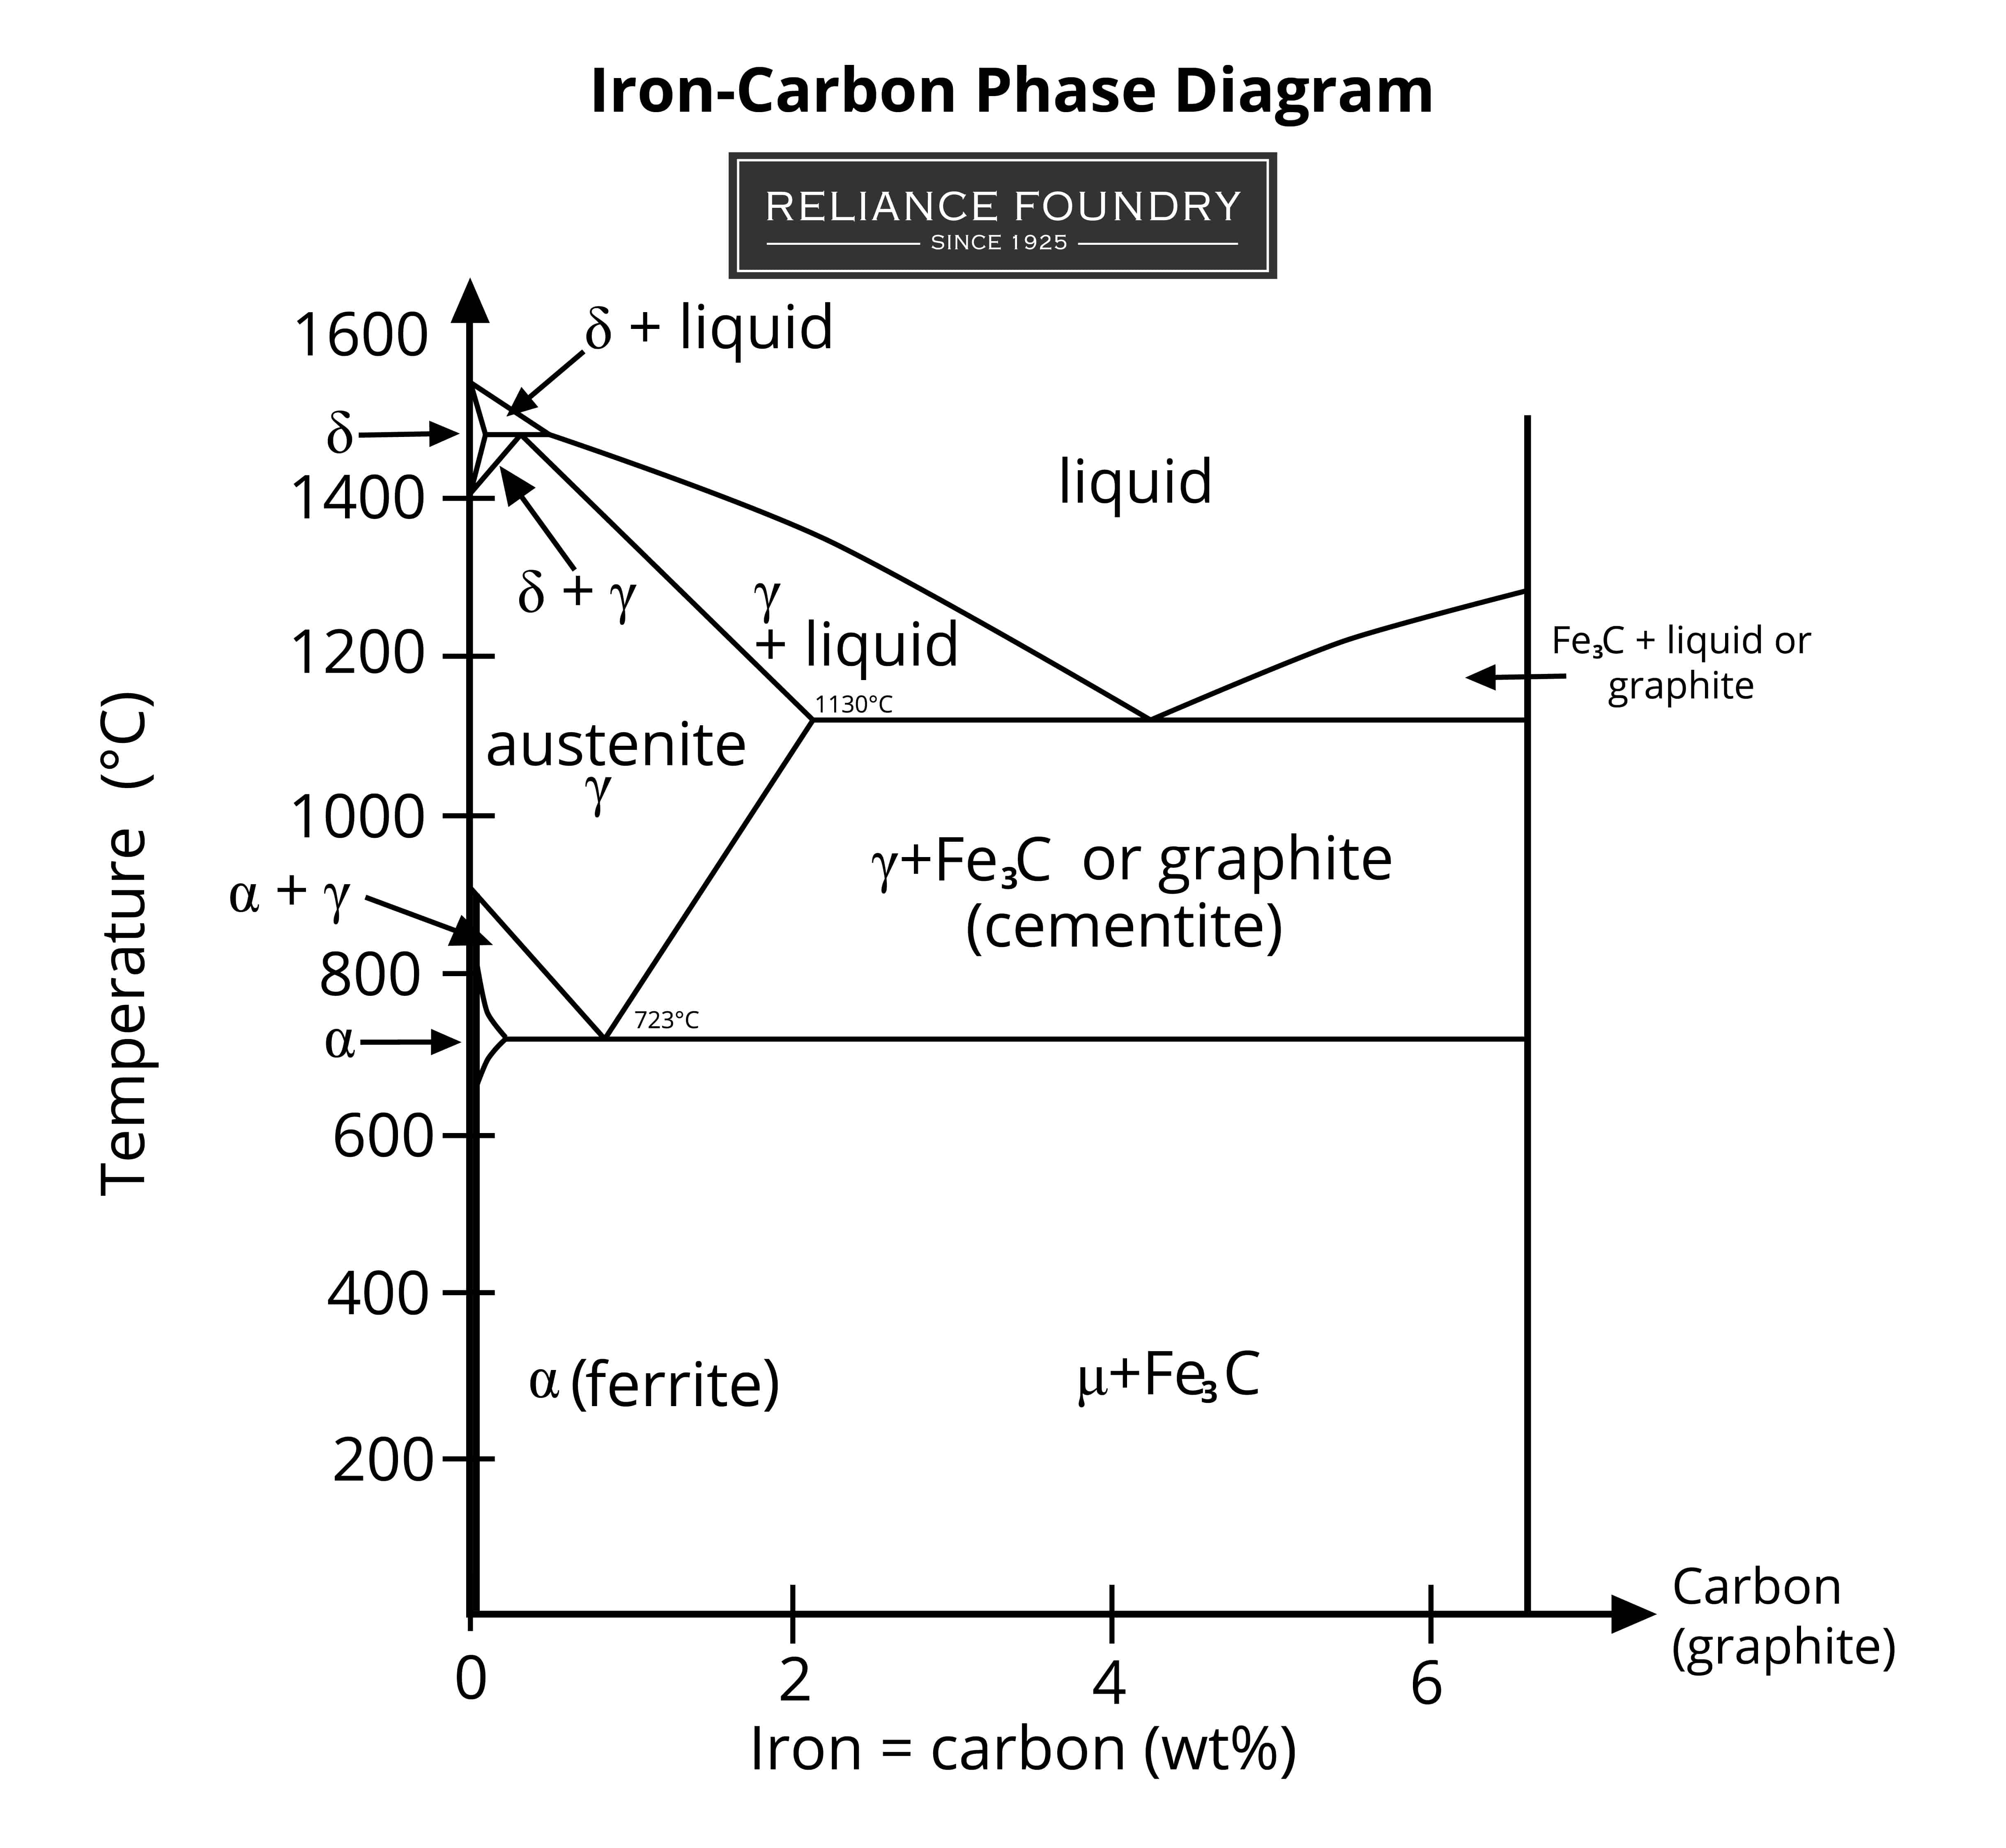 x轴碳在2-6%之间，y轴温度在200-1600°C之间的技术图表显示了钢在不同温度下的组织类型，包括奥氏体、铁素体和石墨